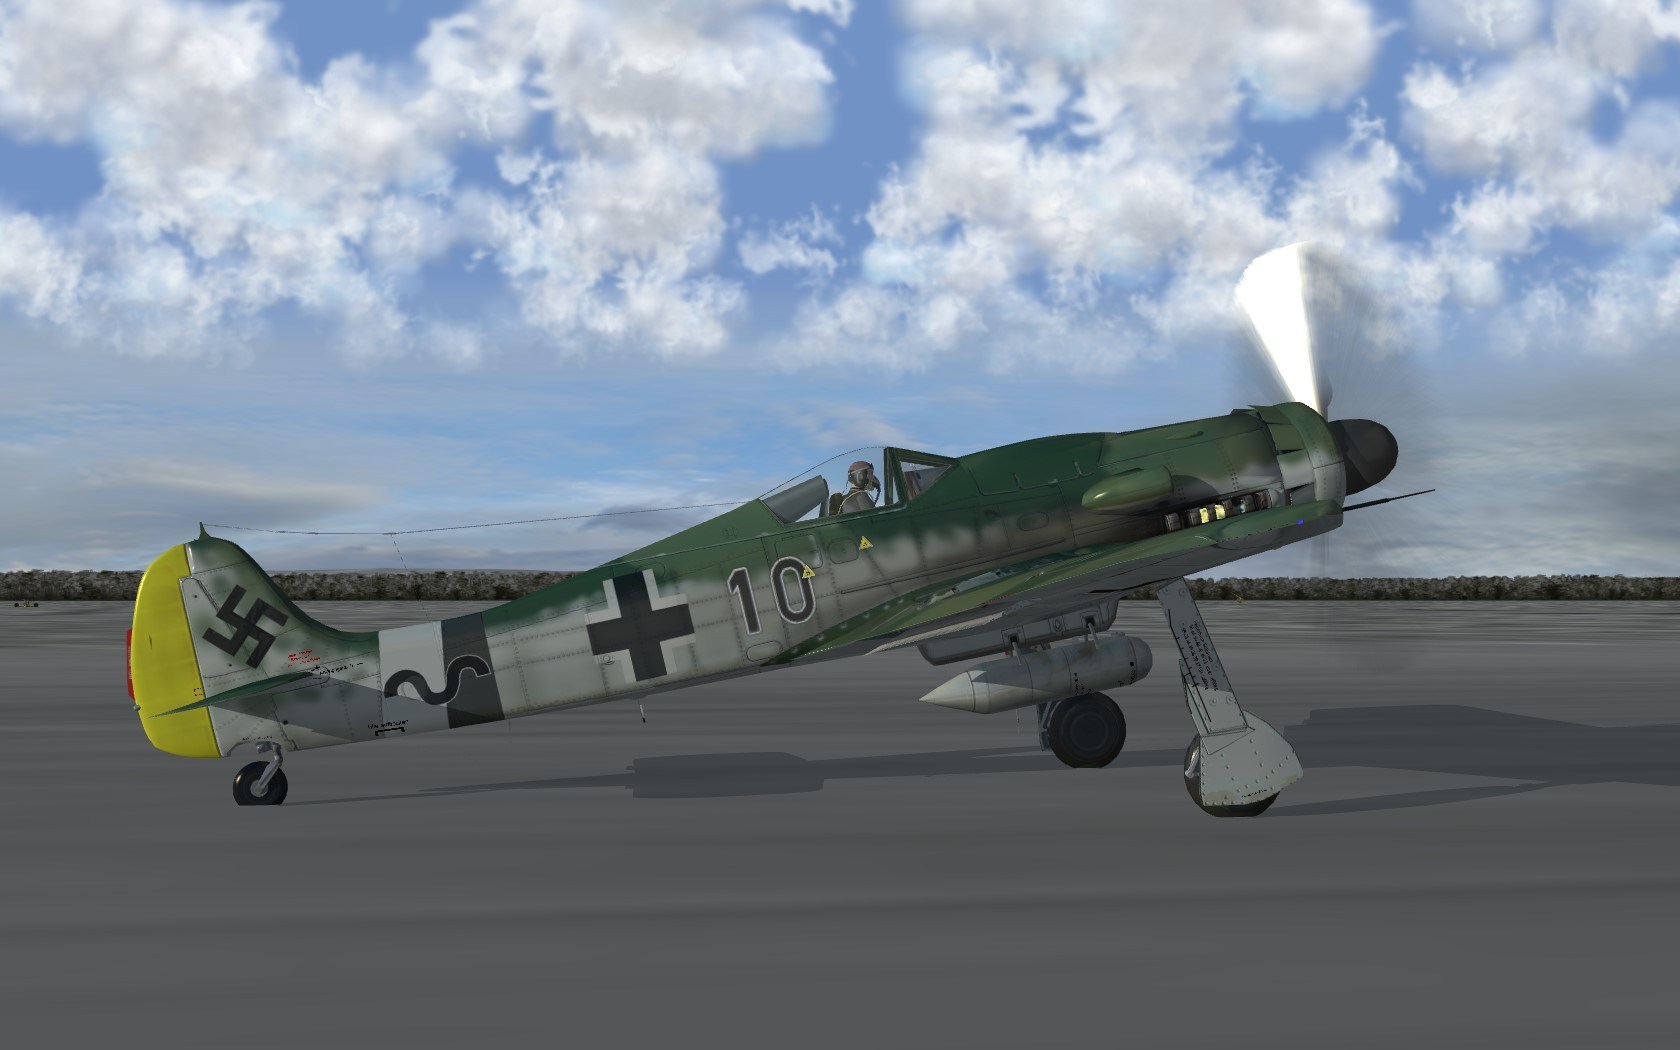 FW-190D